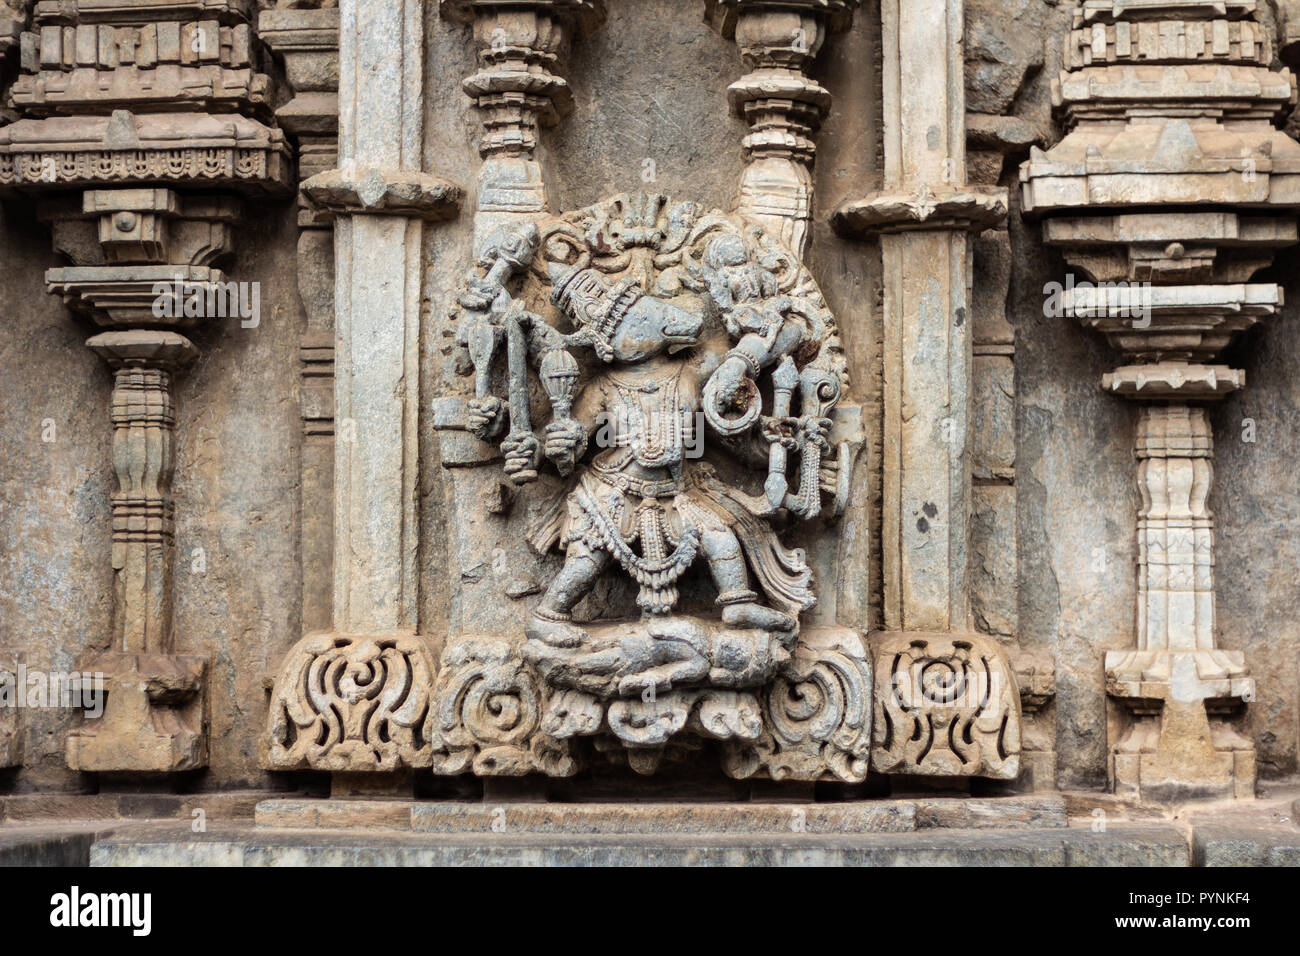 Aufwendigen Schnitzereien der hinduistischen Gottheiten und Puranischen Geschichten in Belur und Halebid Tempel Prämisse. Belur, Karnataka, Indien. Stockfoto